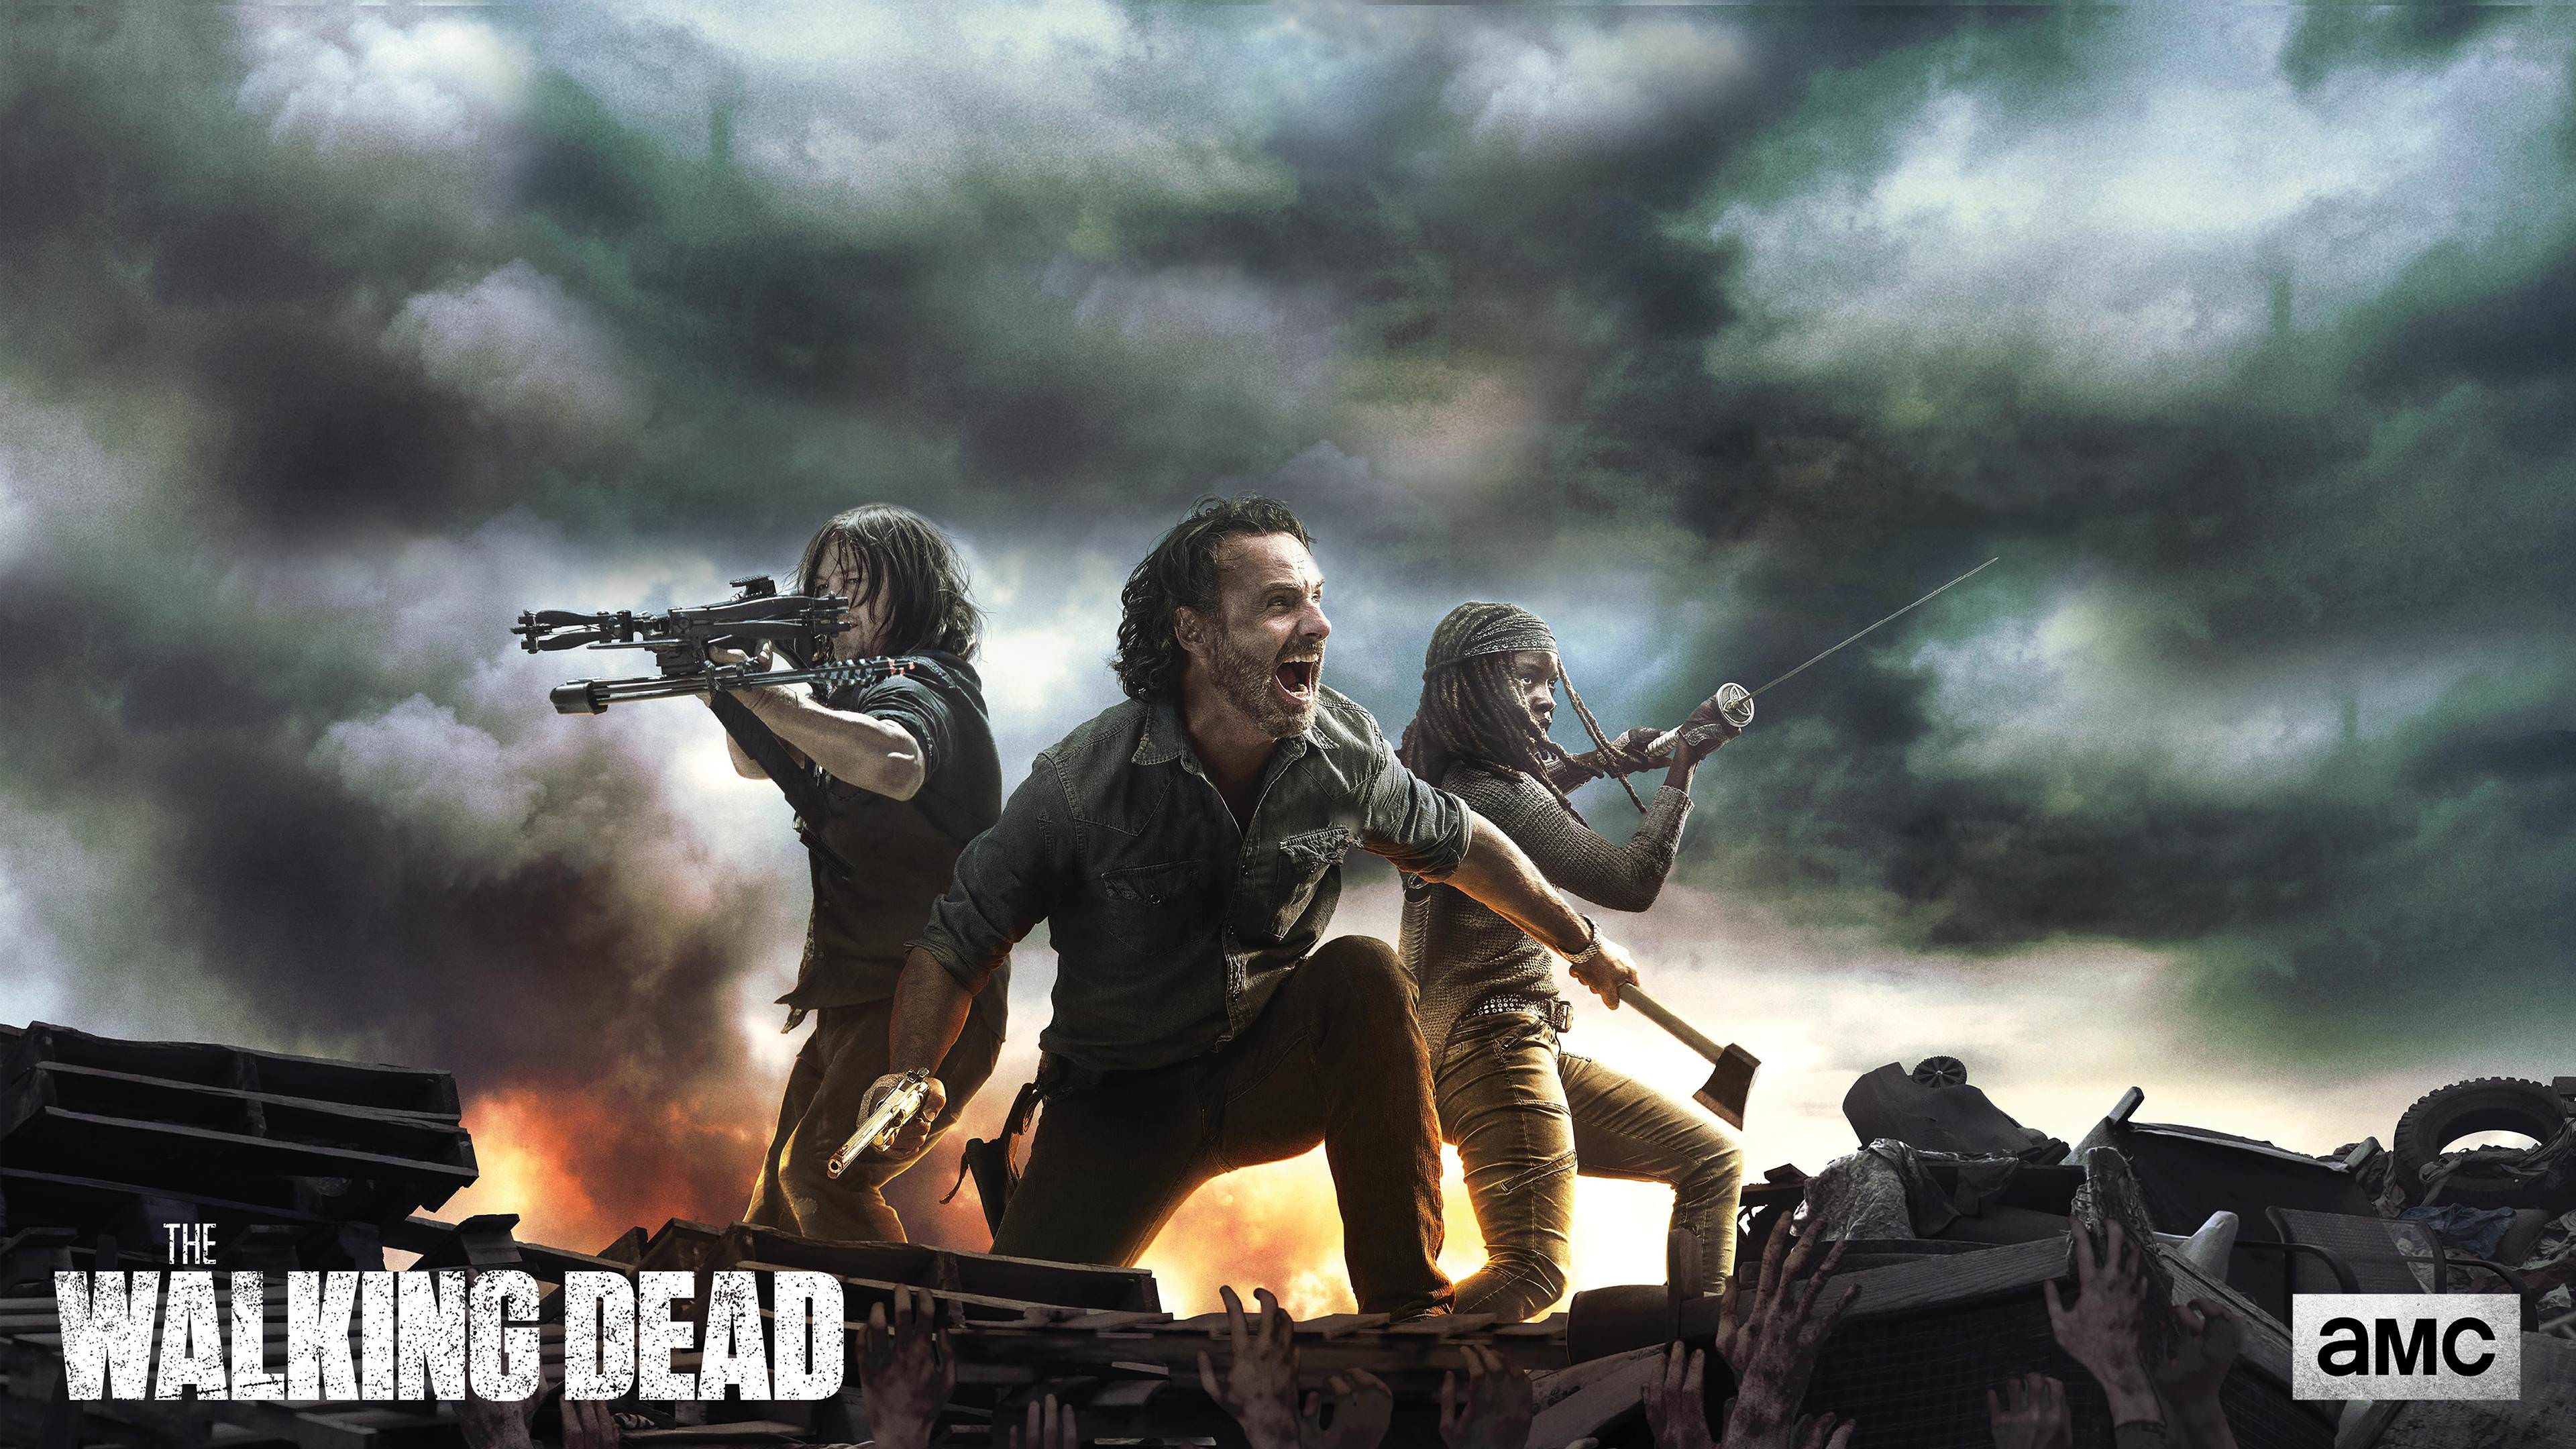 Walking Dead Wallpaper For My Desktop › Picserio - Walking Dead The Last Stand Promo - HD Wallpaper 